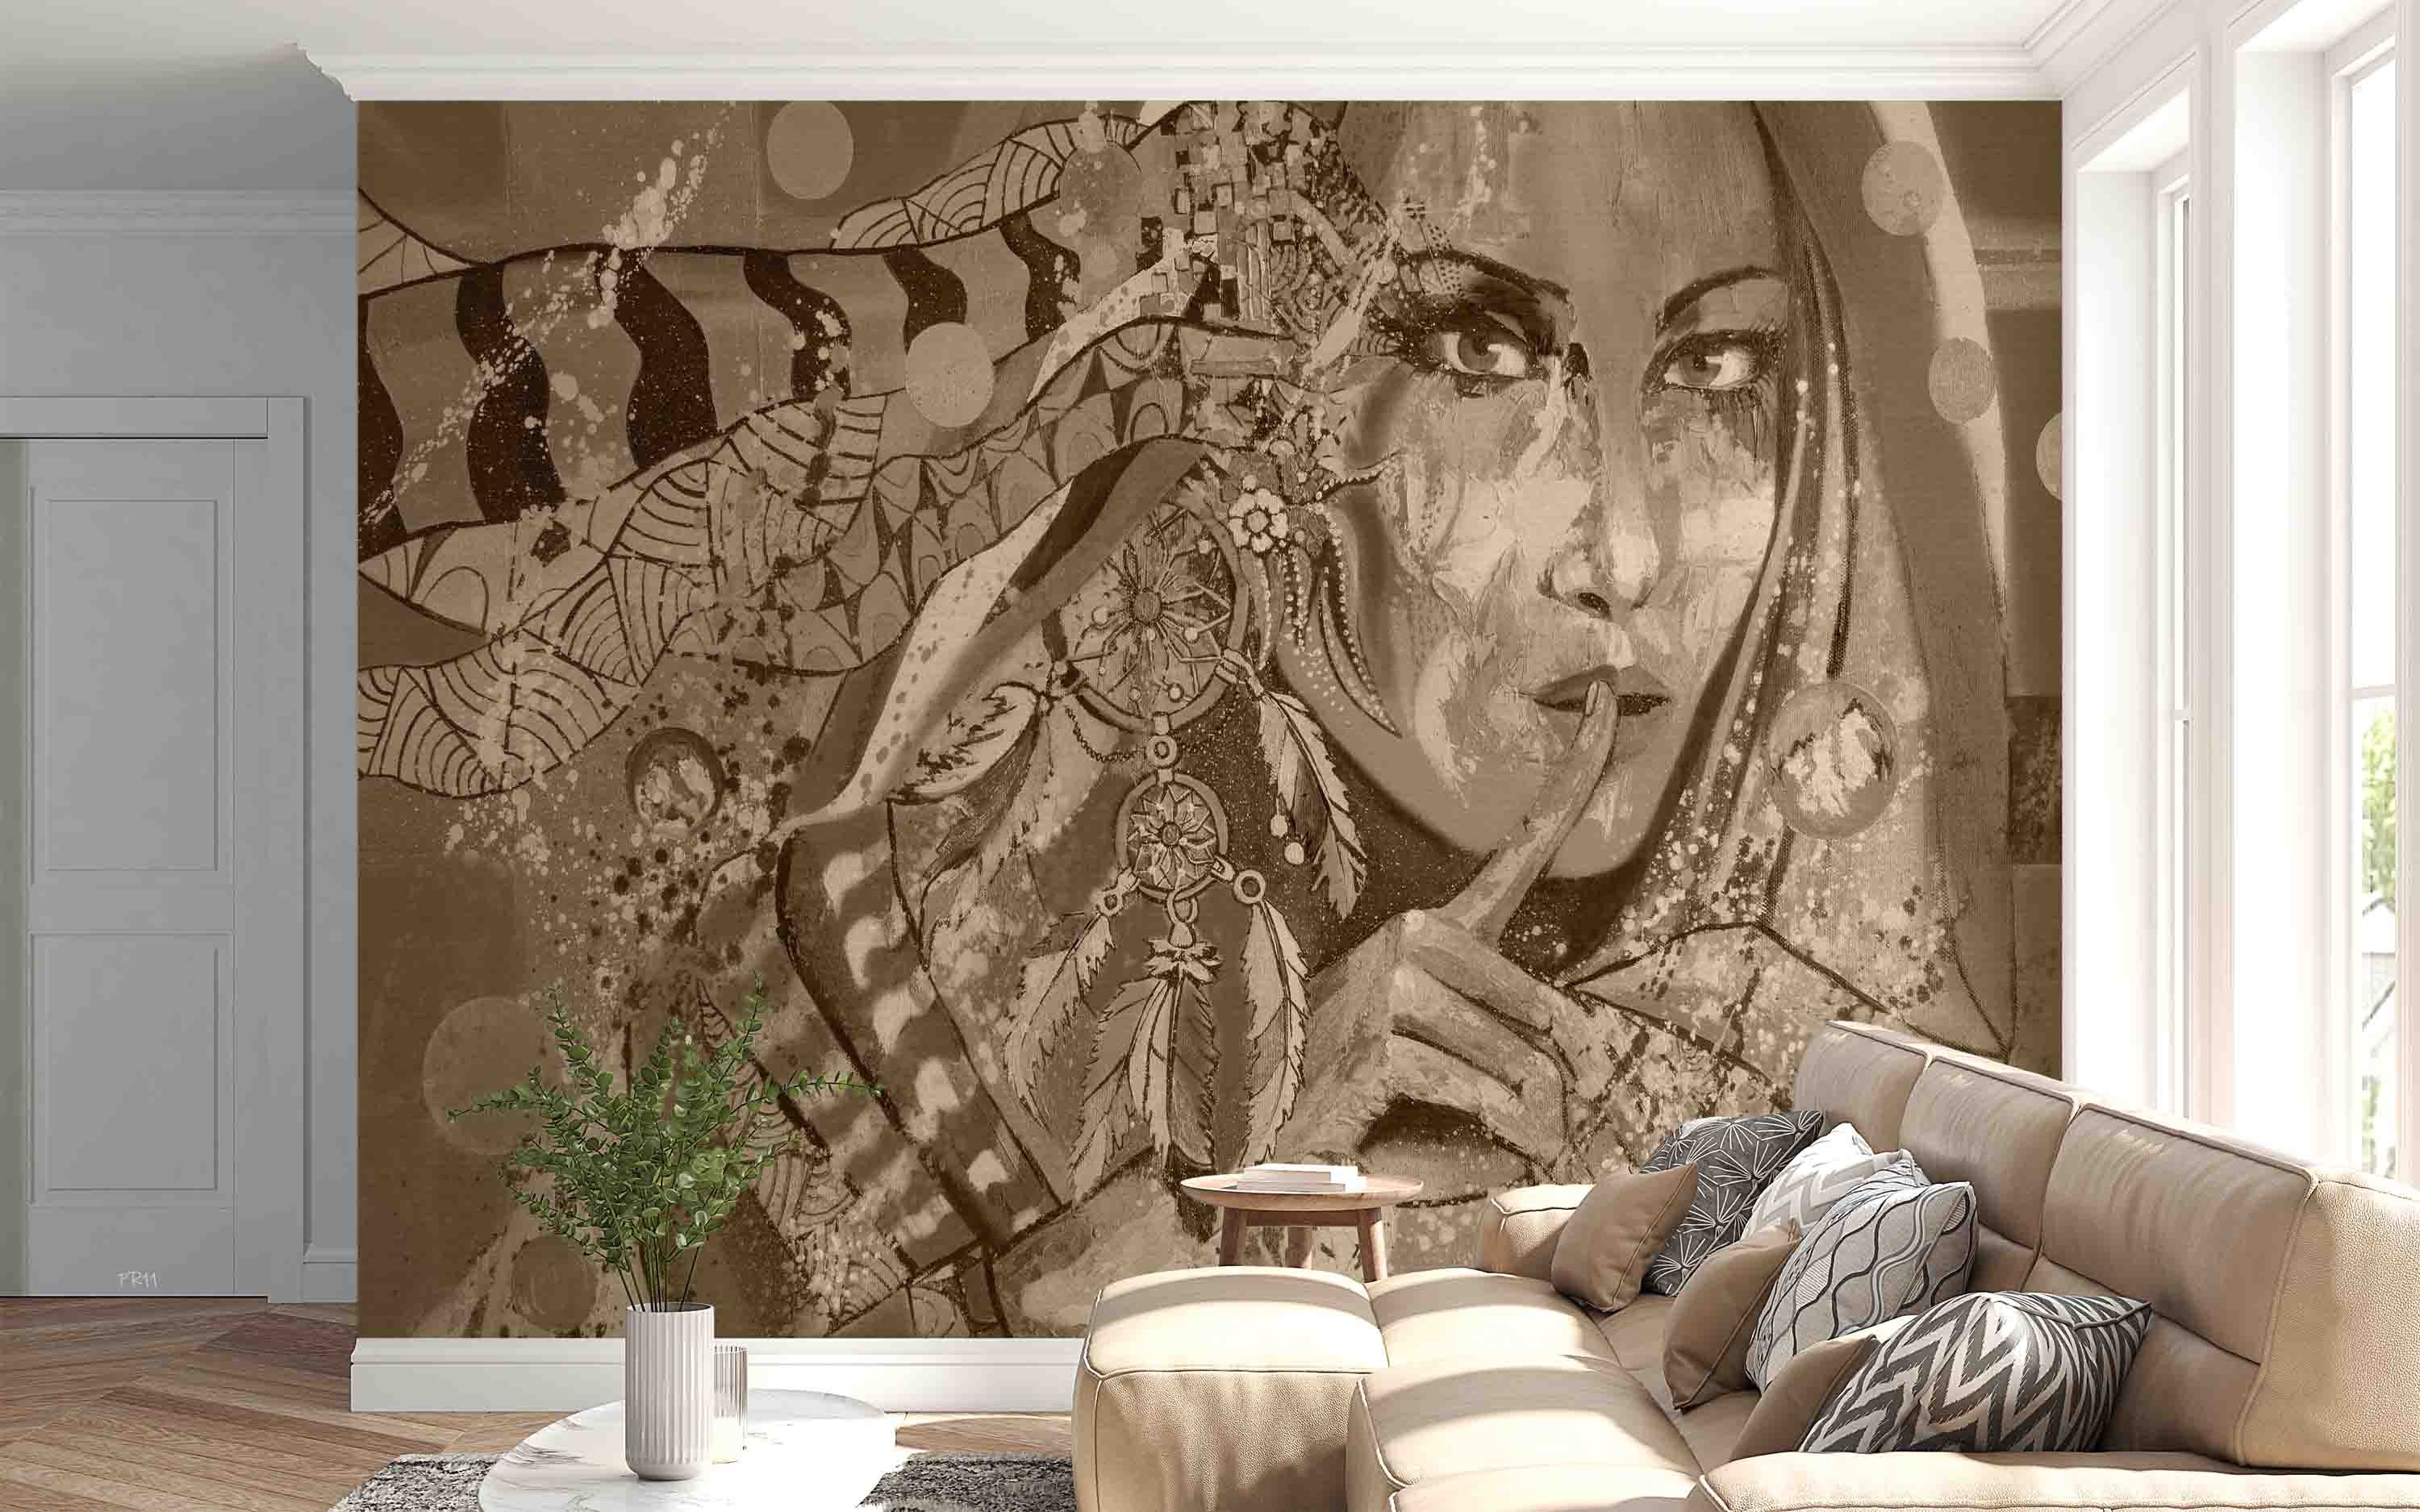 3D Vintage Indian Girl Wall Mural Wallpaper GD 4832- Jess Art Decoration